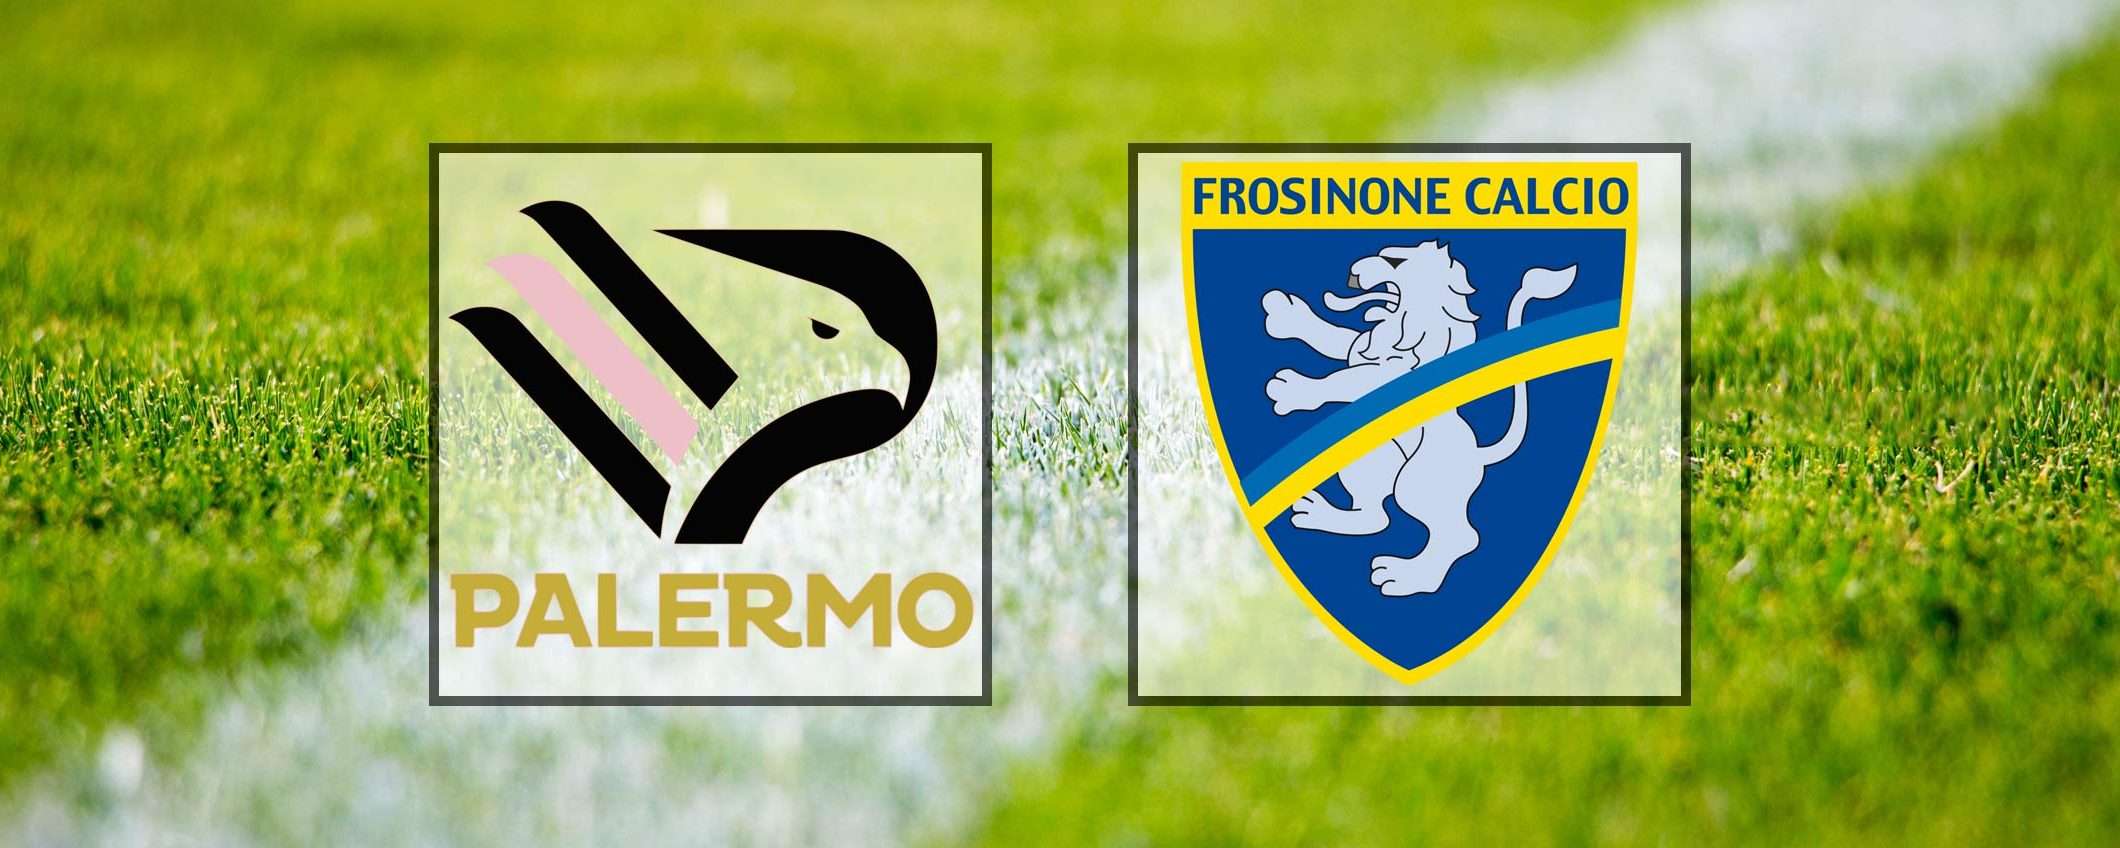 Come vedere Palermo-Frosinone in streaming